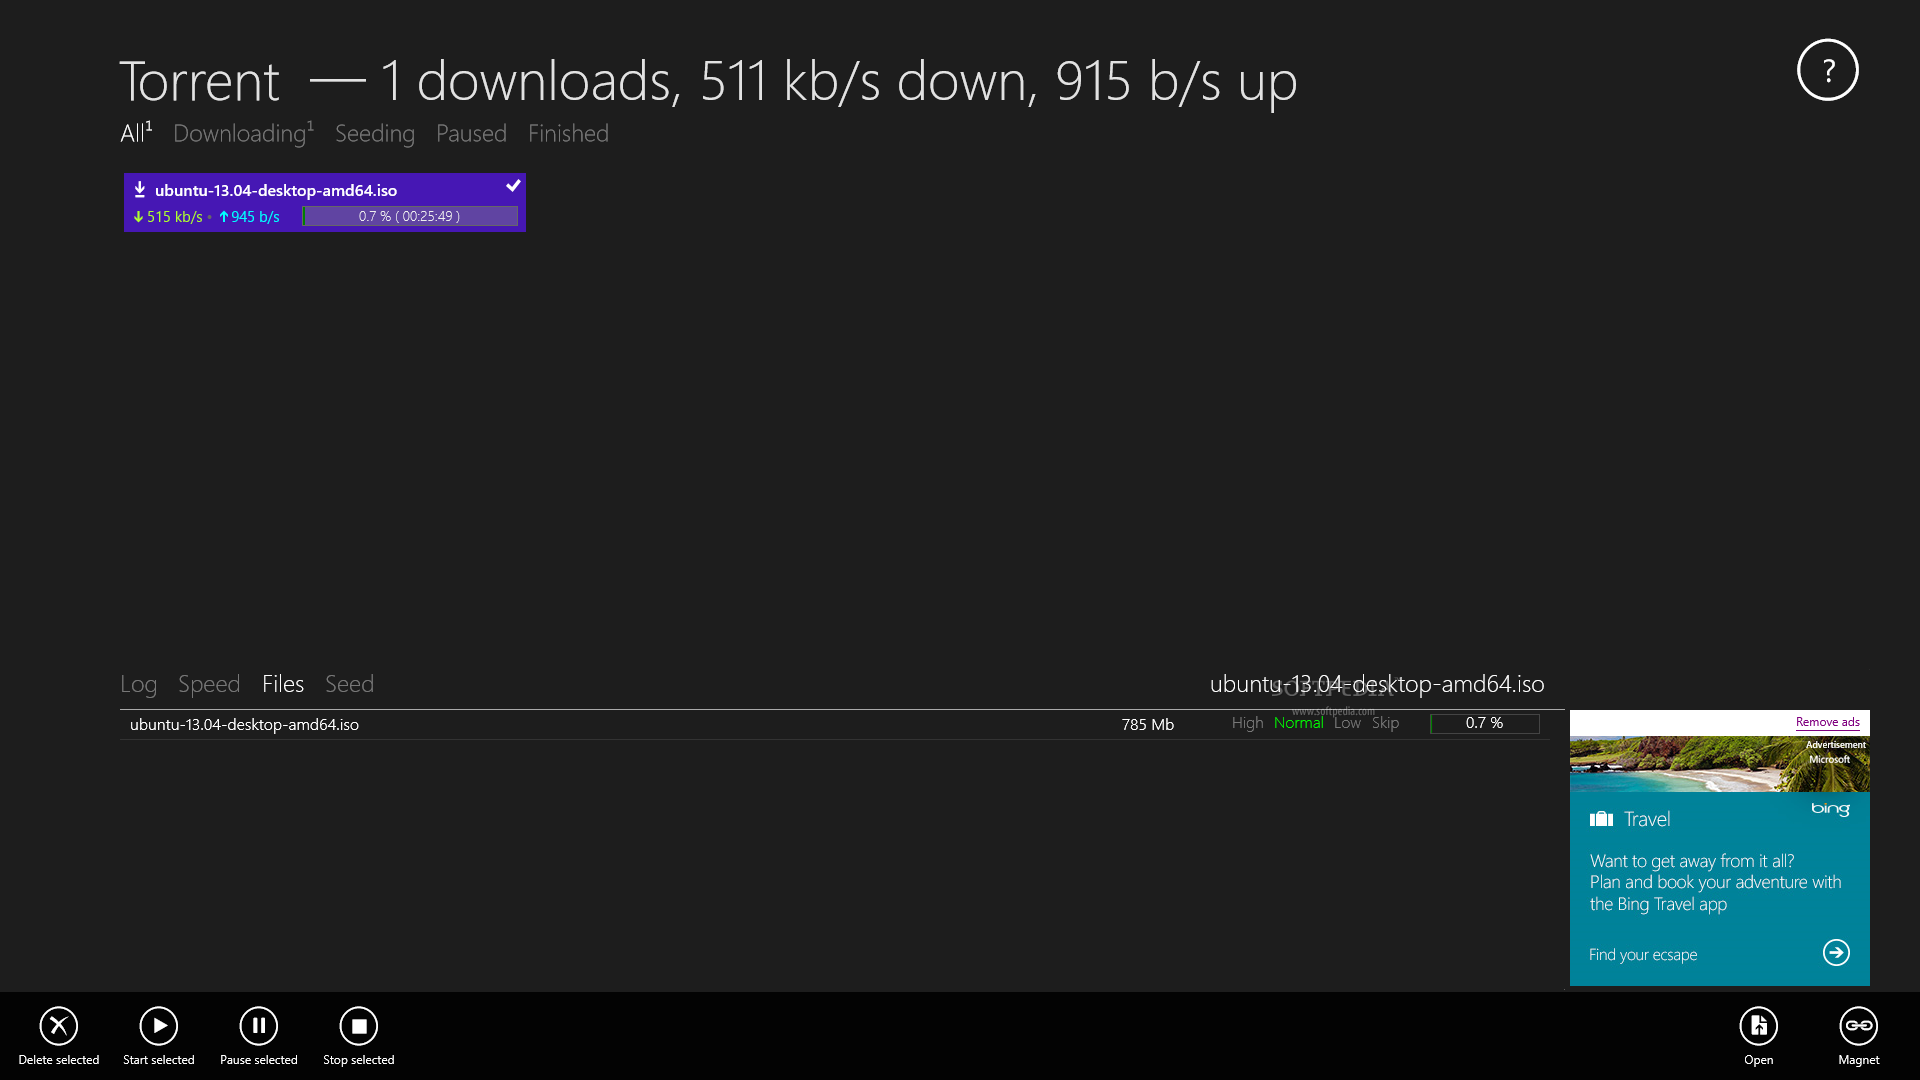 activclient windows 10 download torrent